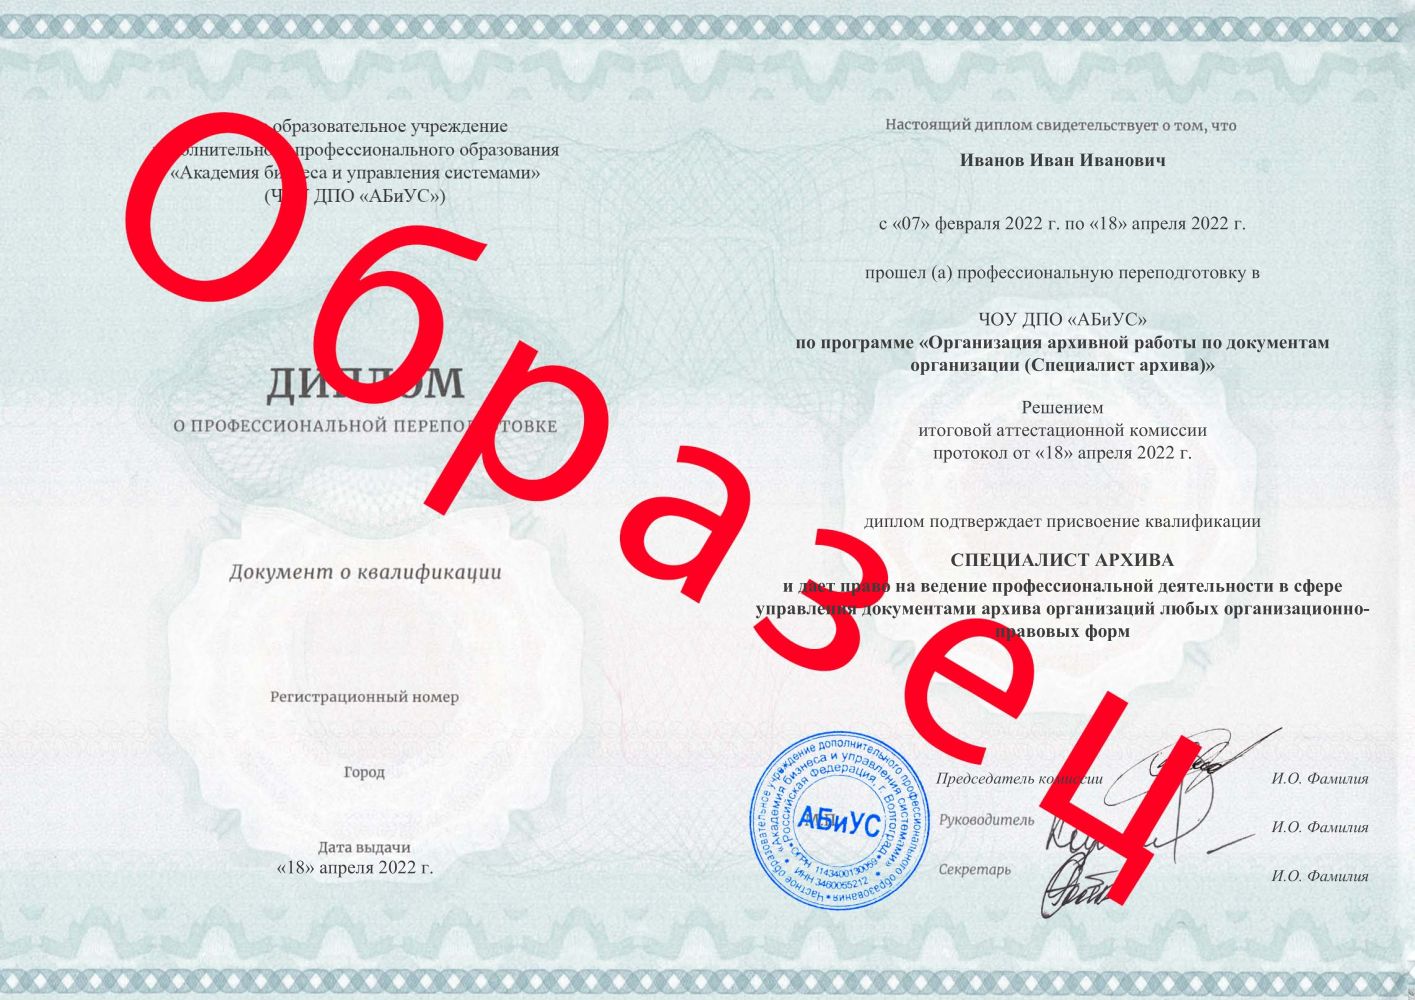 Диплом Организация архивной работы по документам организации (Специалист архива) 260 часов 10666 руб.